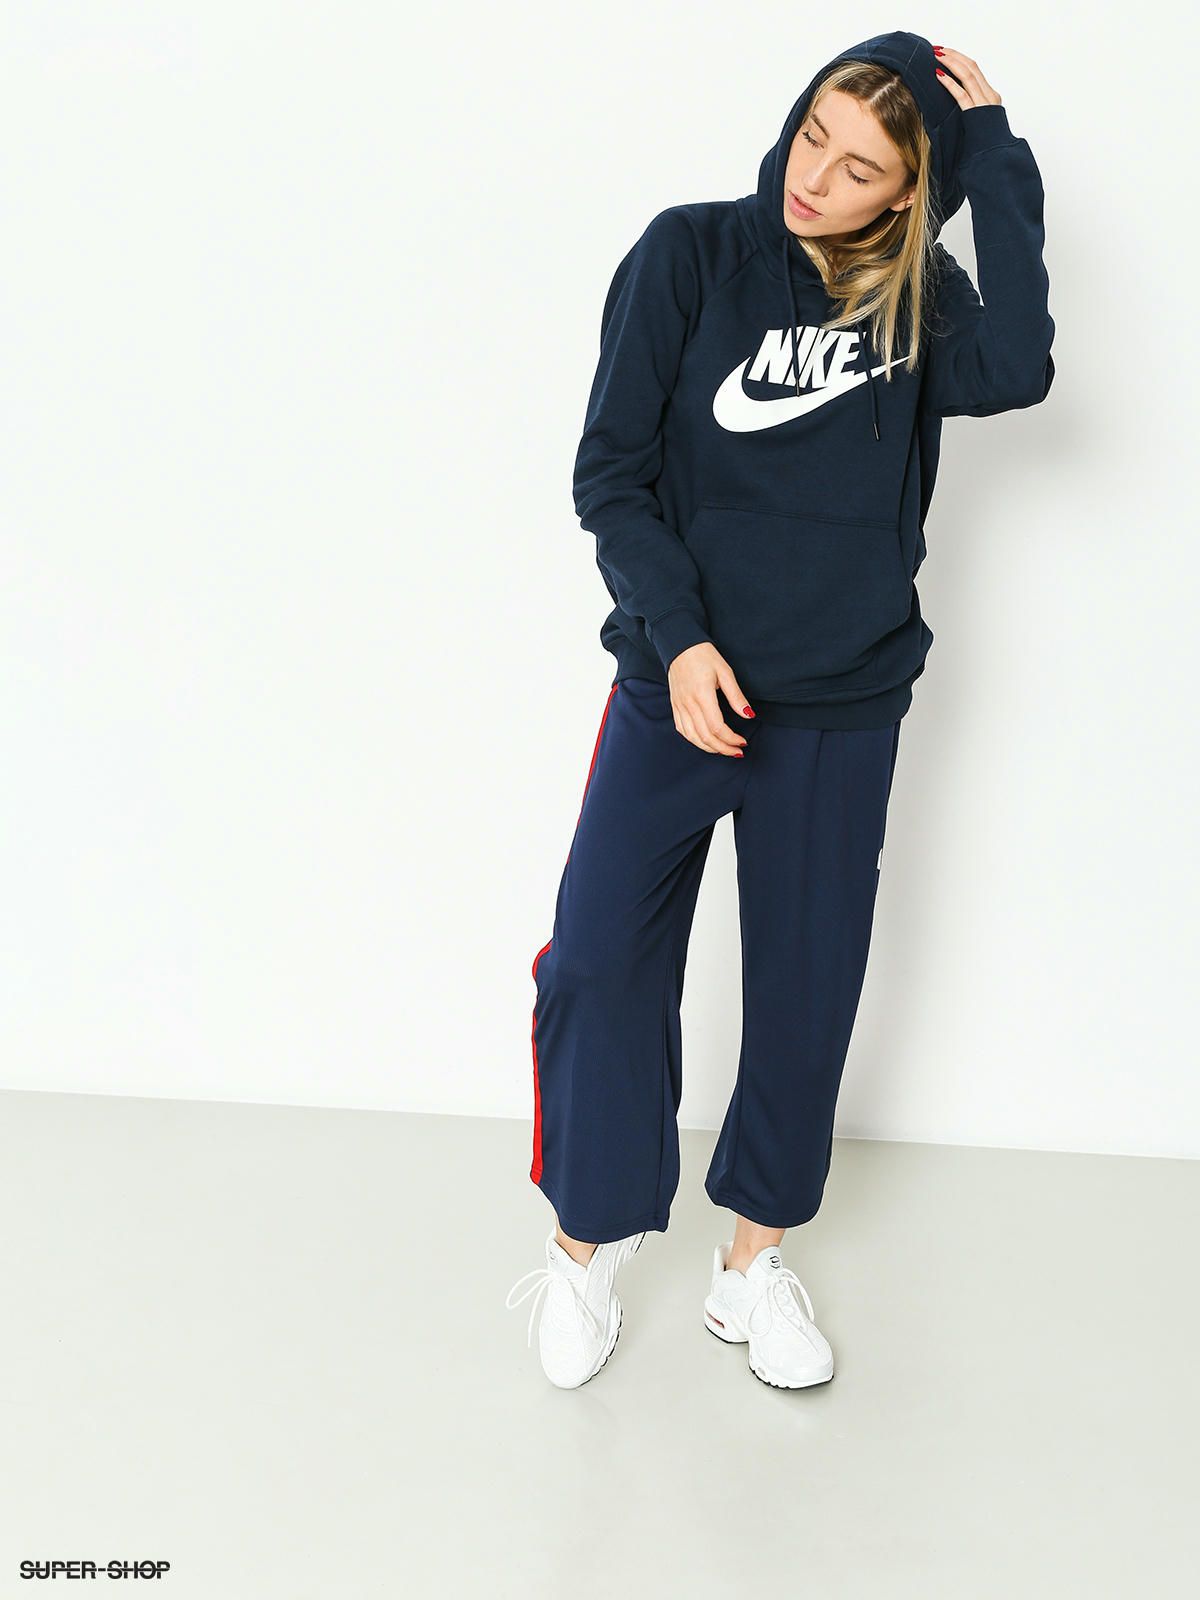 Nike Women's Sportswear Rally Fleece Sweatshirt - Macy's